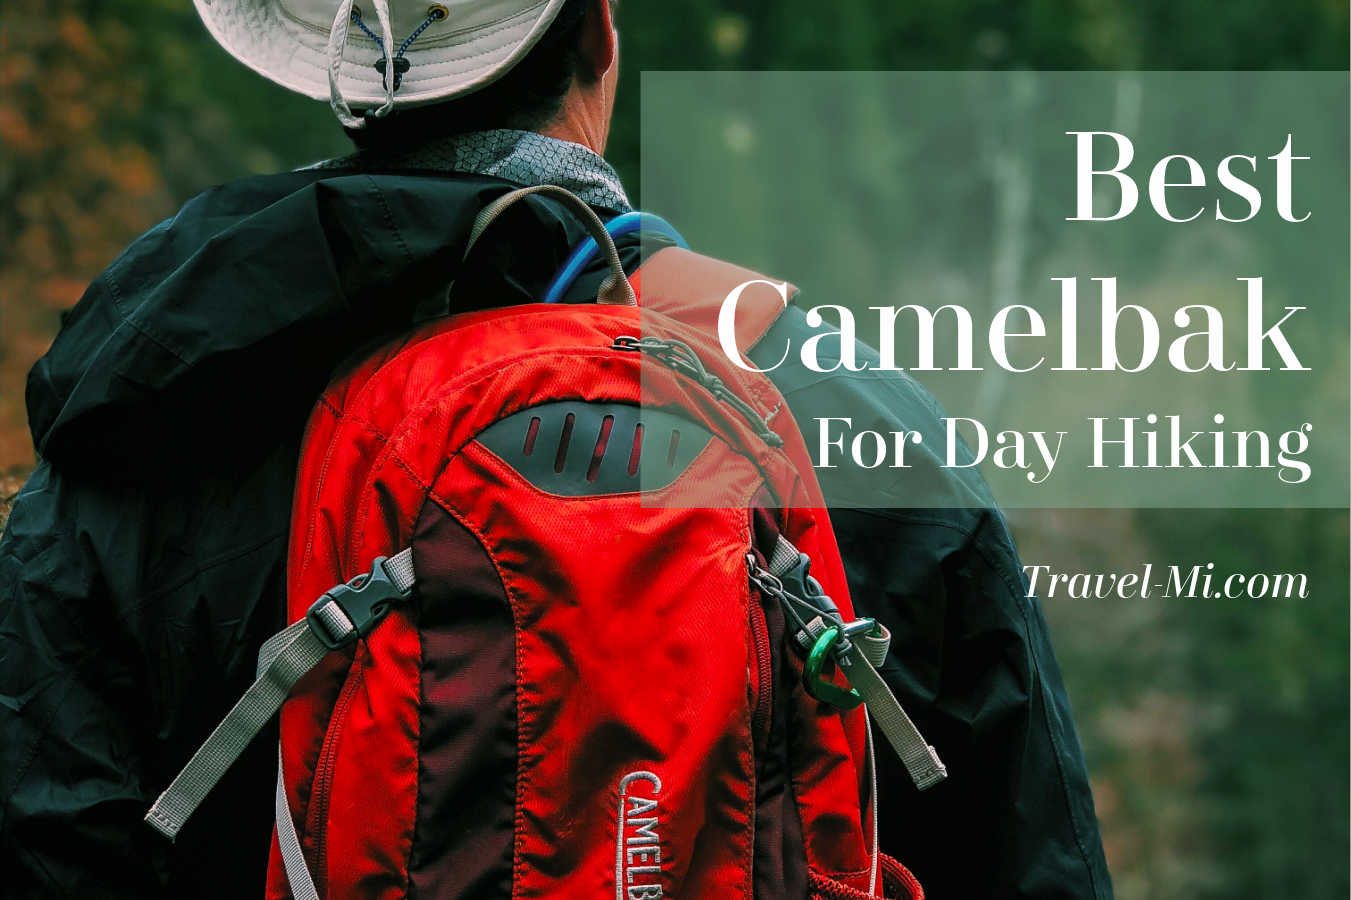 https://www.travel-mi.com/images/Best-Camelbak-for-day-hiking.jpg